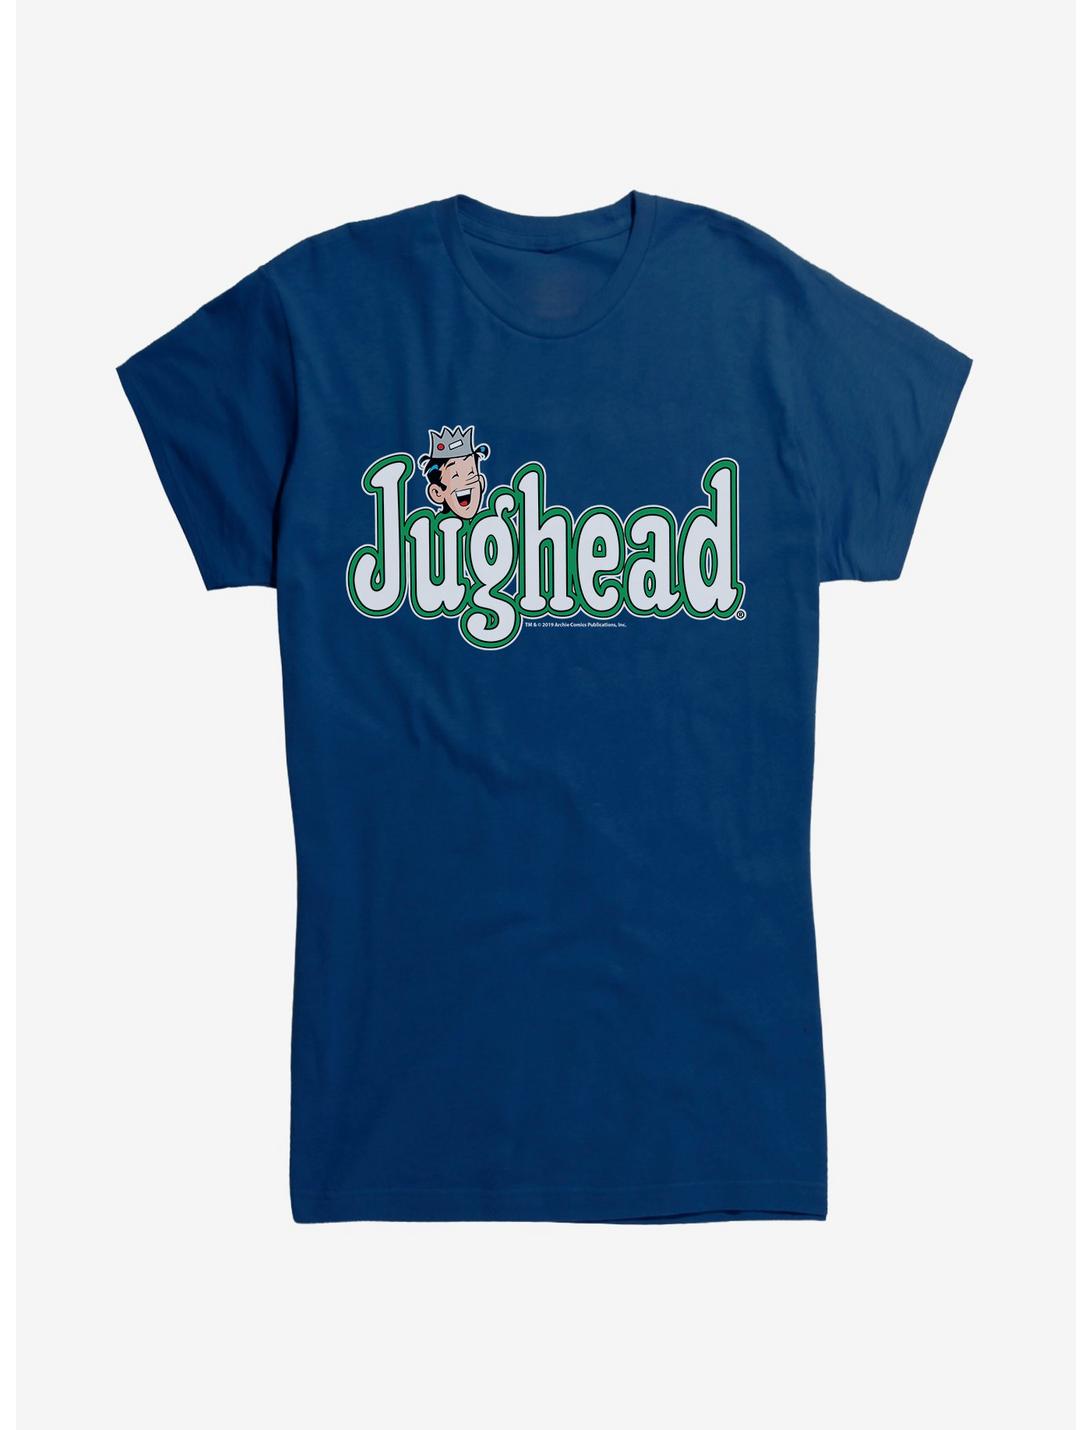 Archie Comics Jughead Girls T-Shirt, NAVY, hi-res